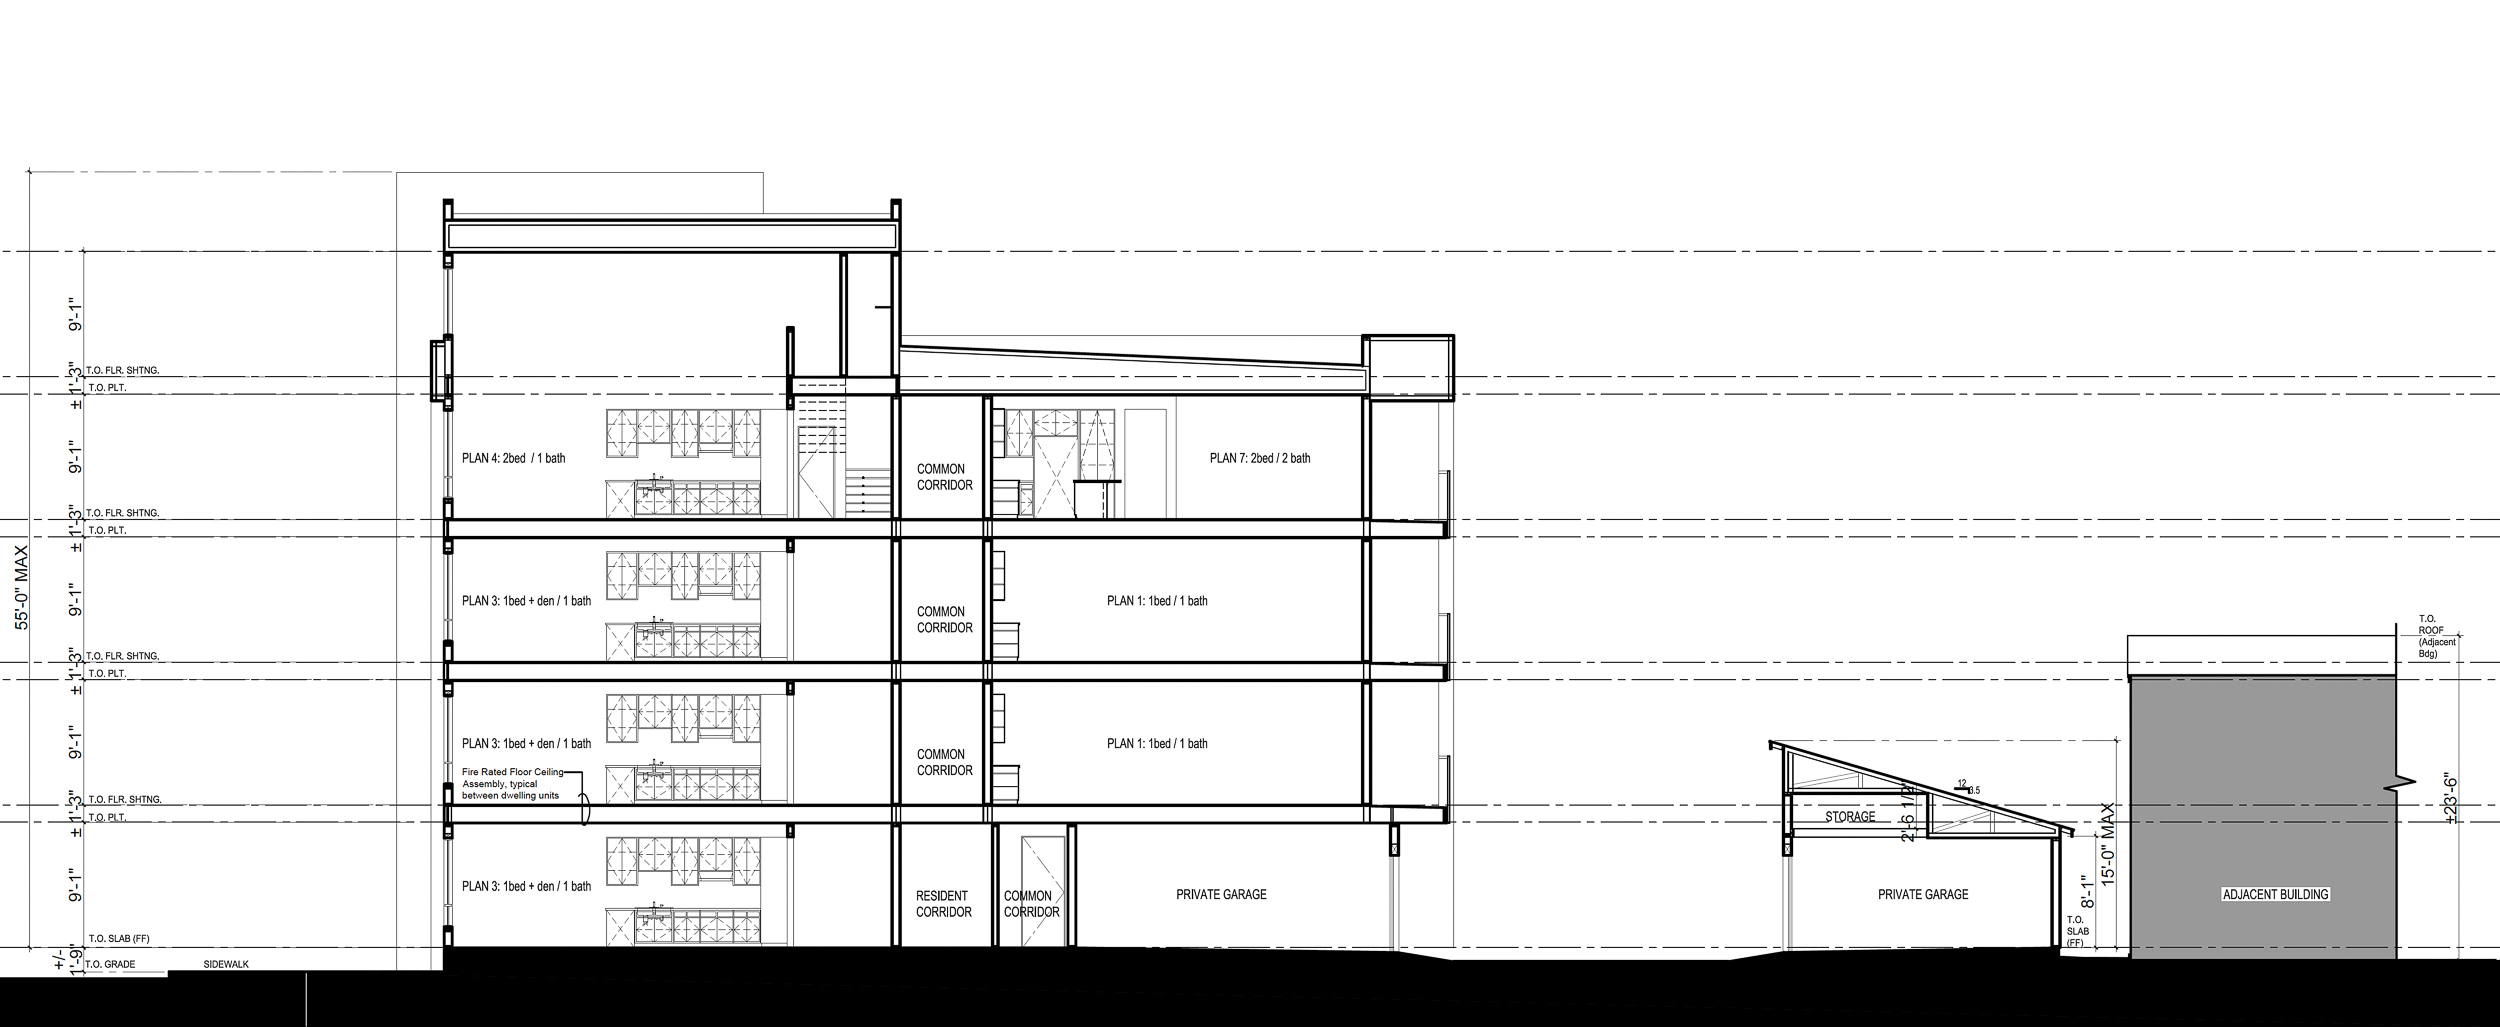 2400 Adeline Street vertical elevation, illustration by KTGY